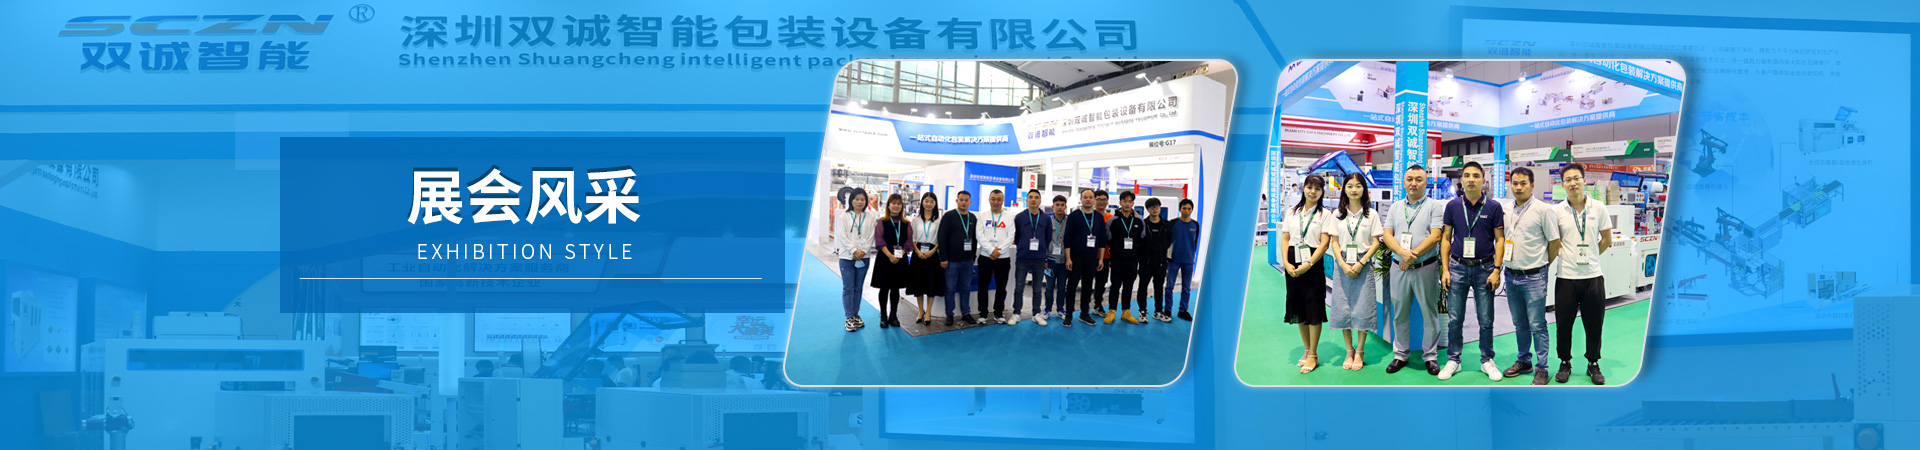 深圳智能装备博览会